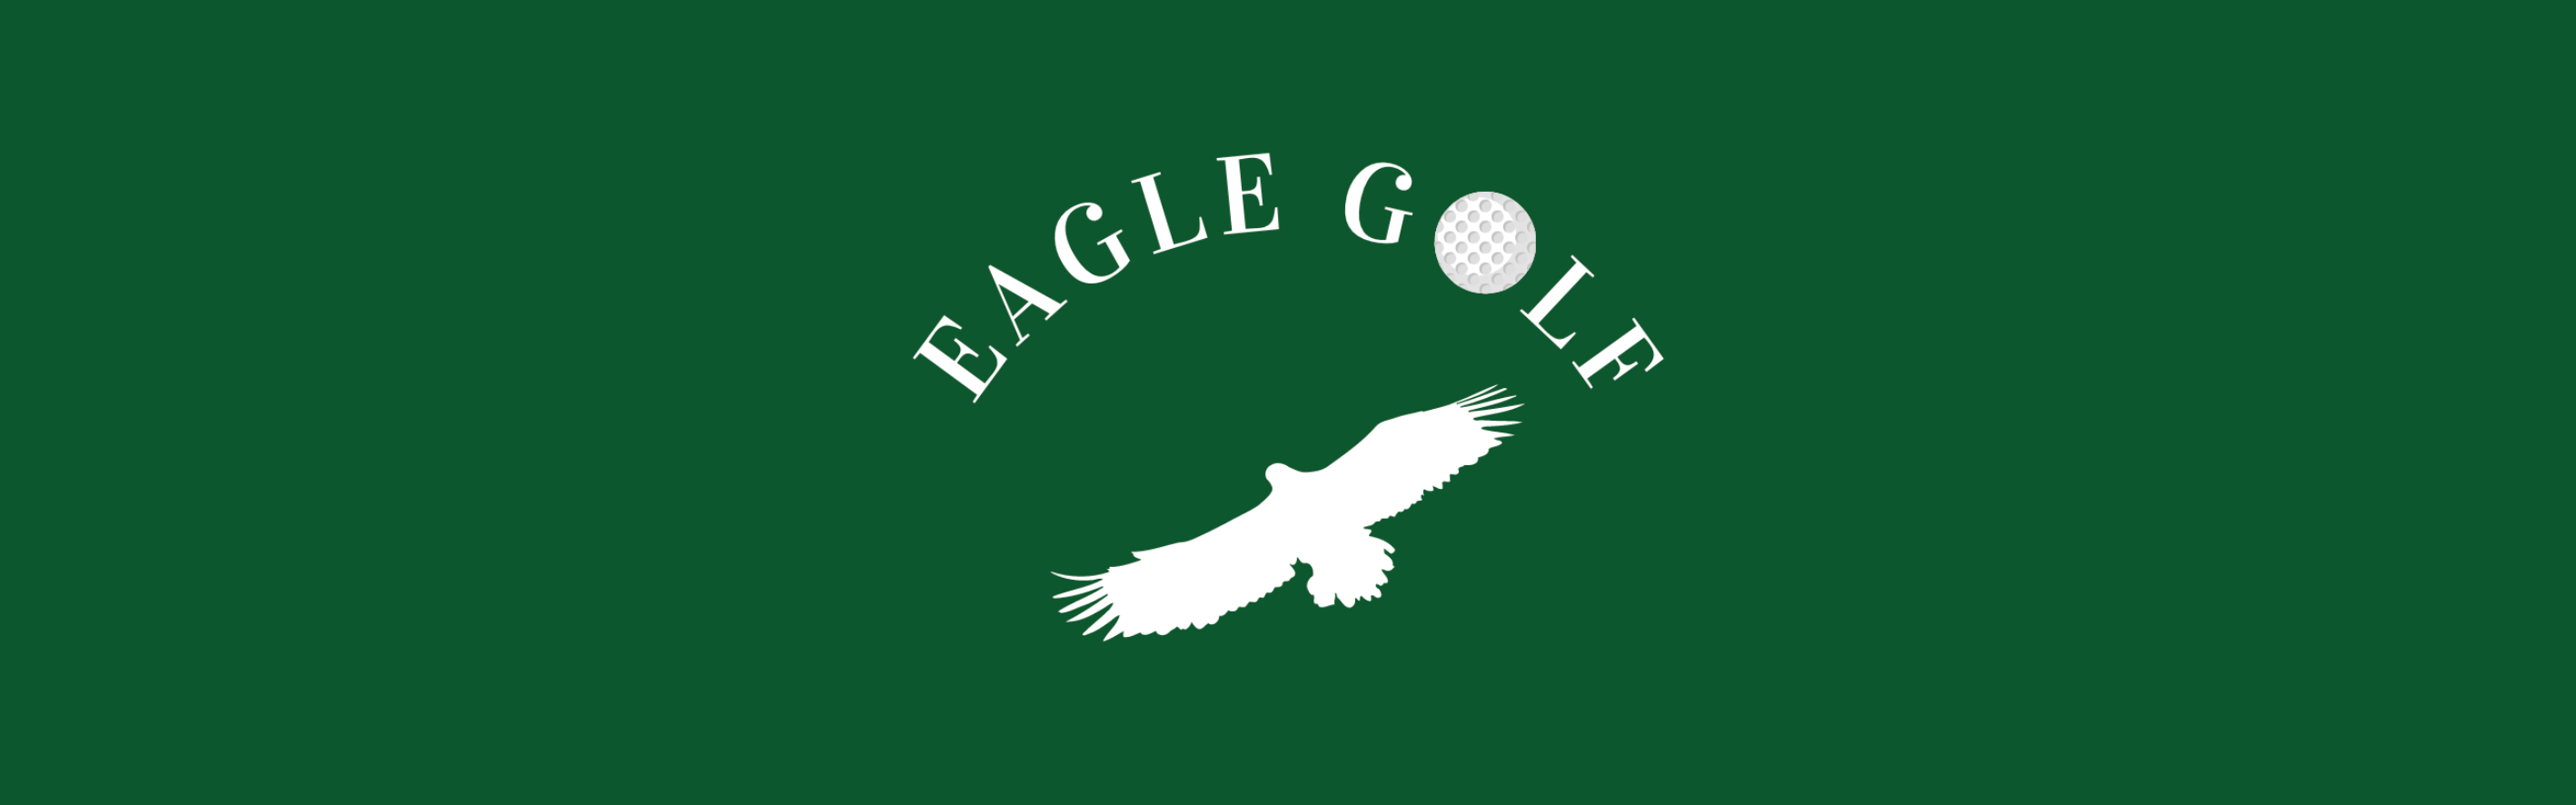 eagle-golf.png